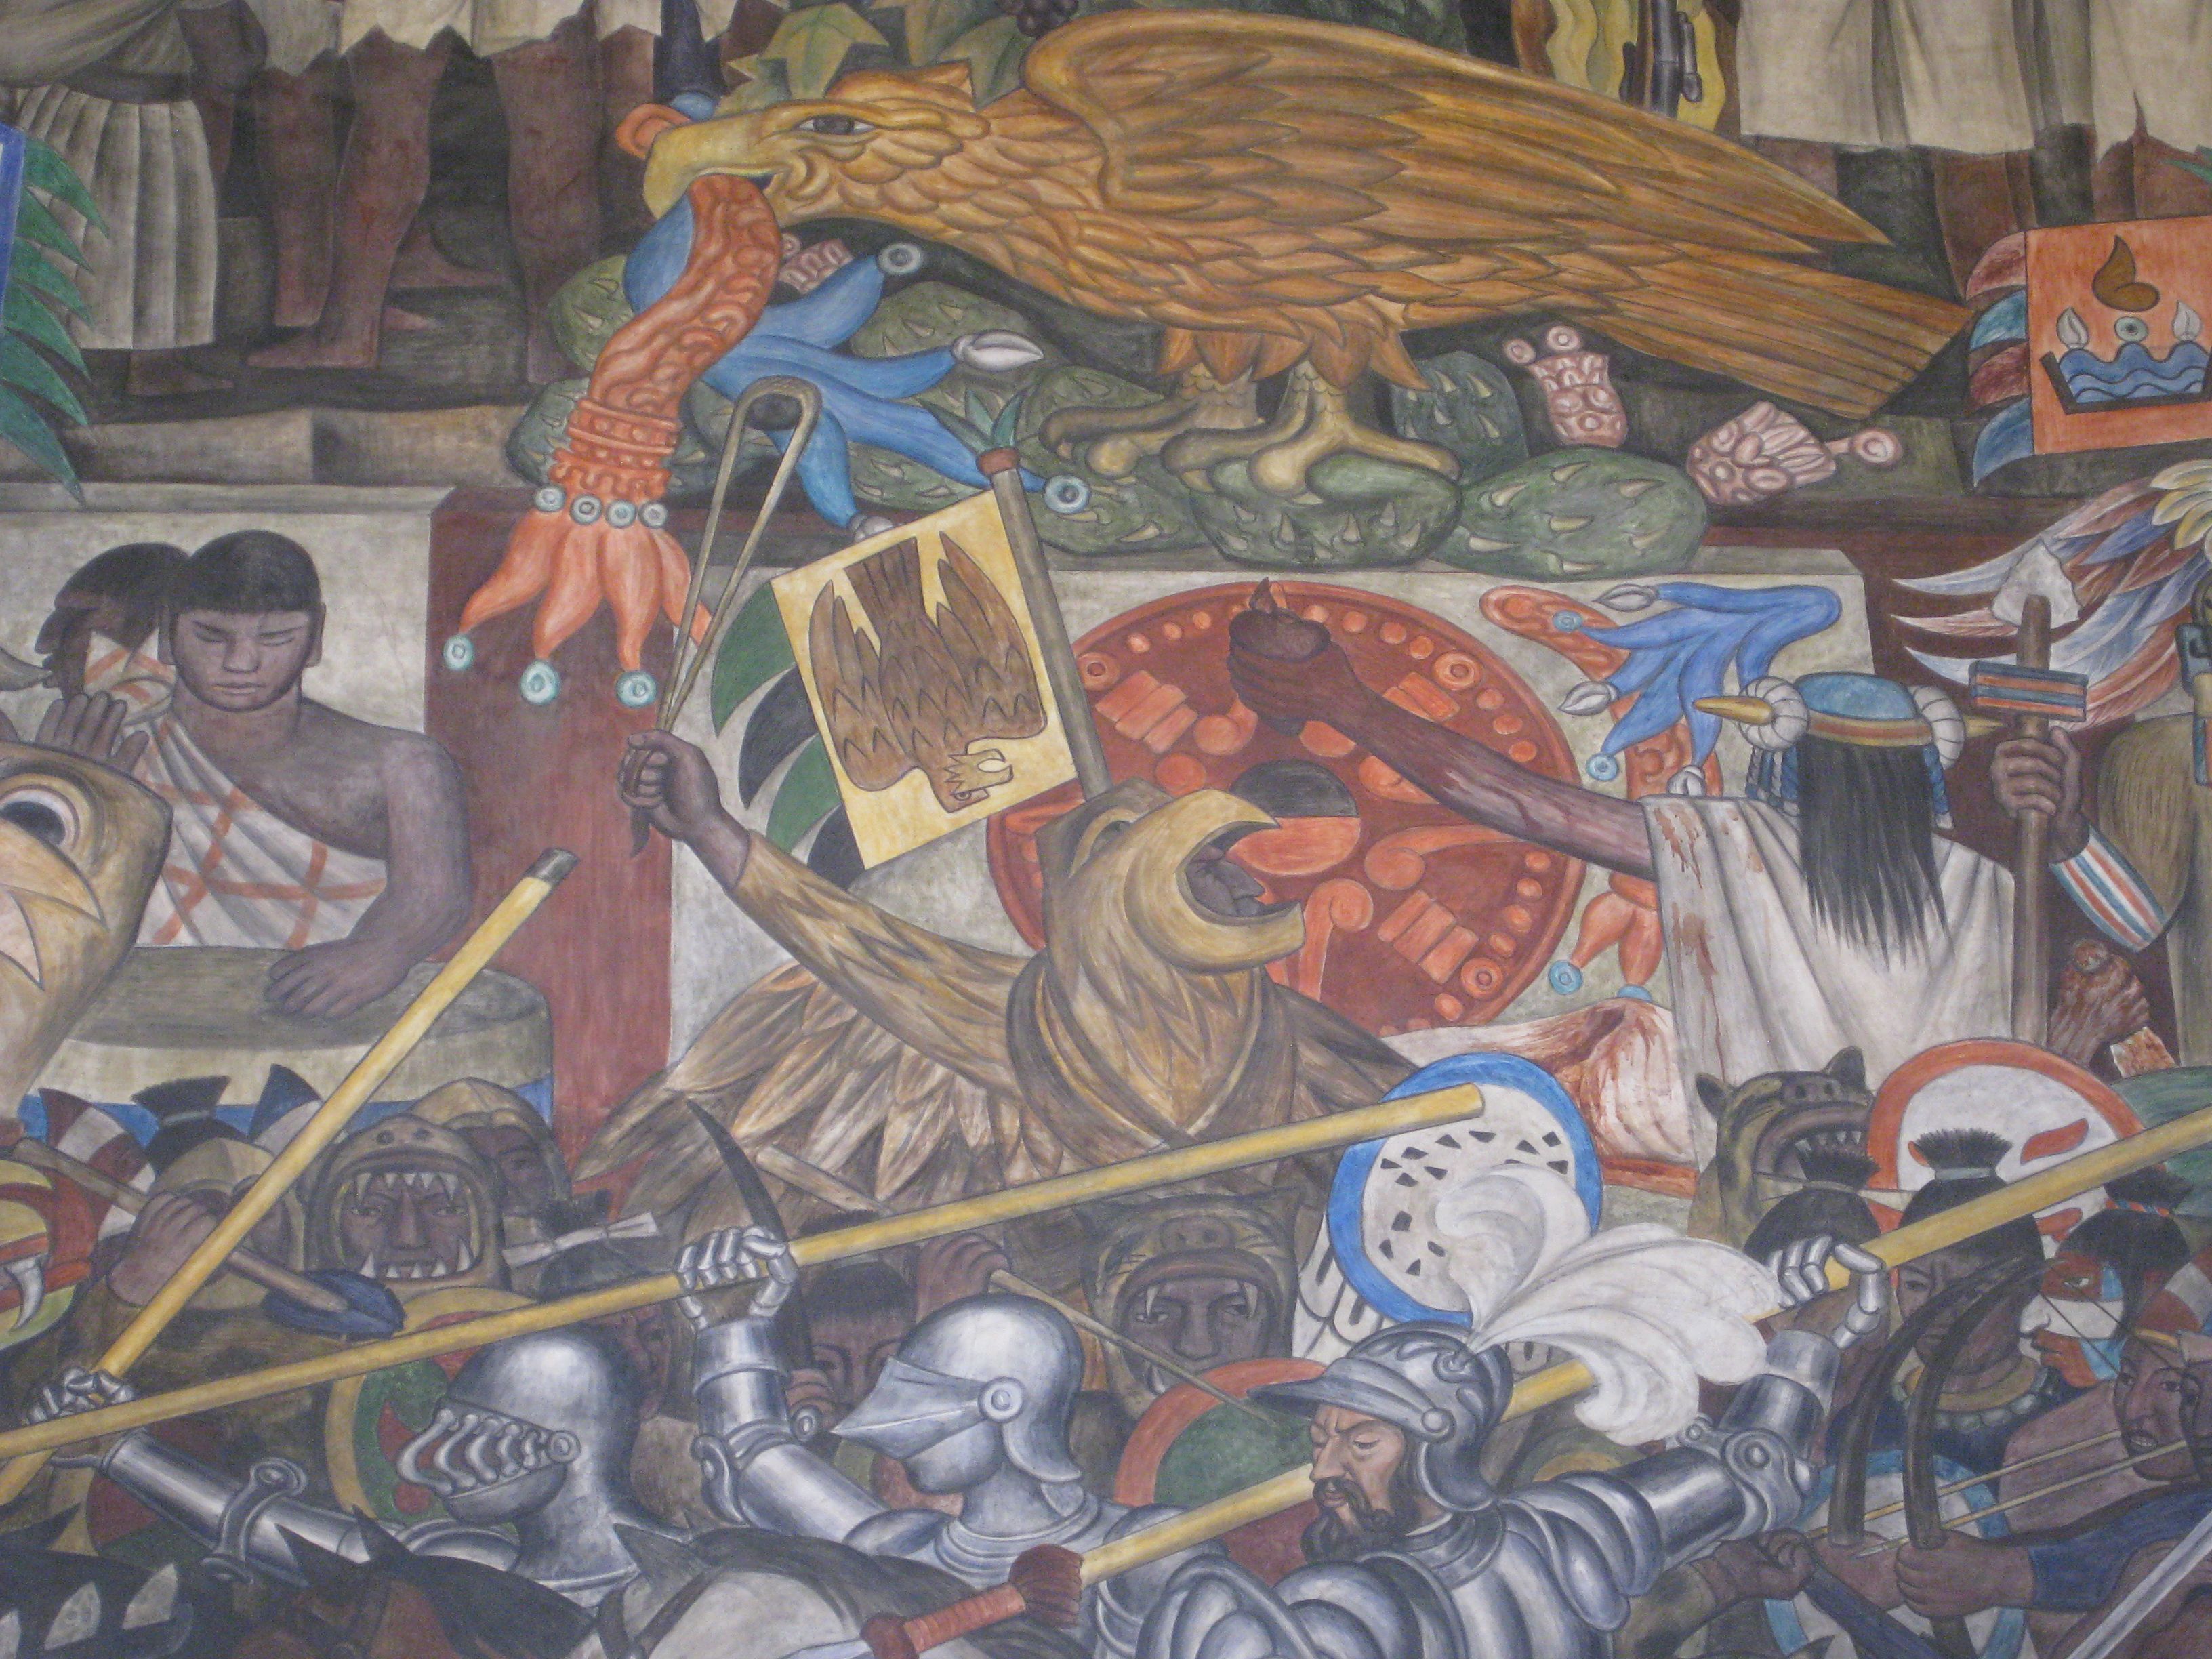 murals by Diego Rivera